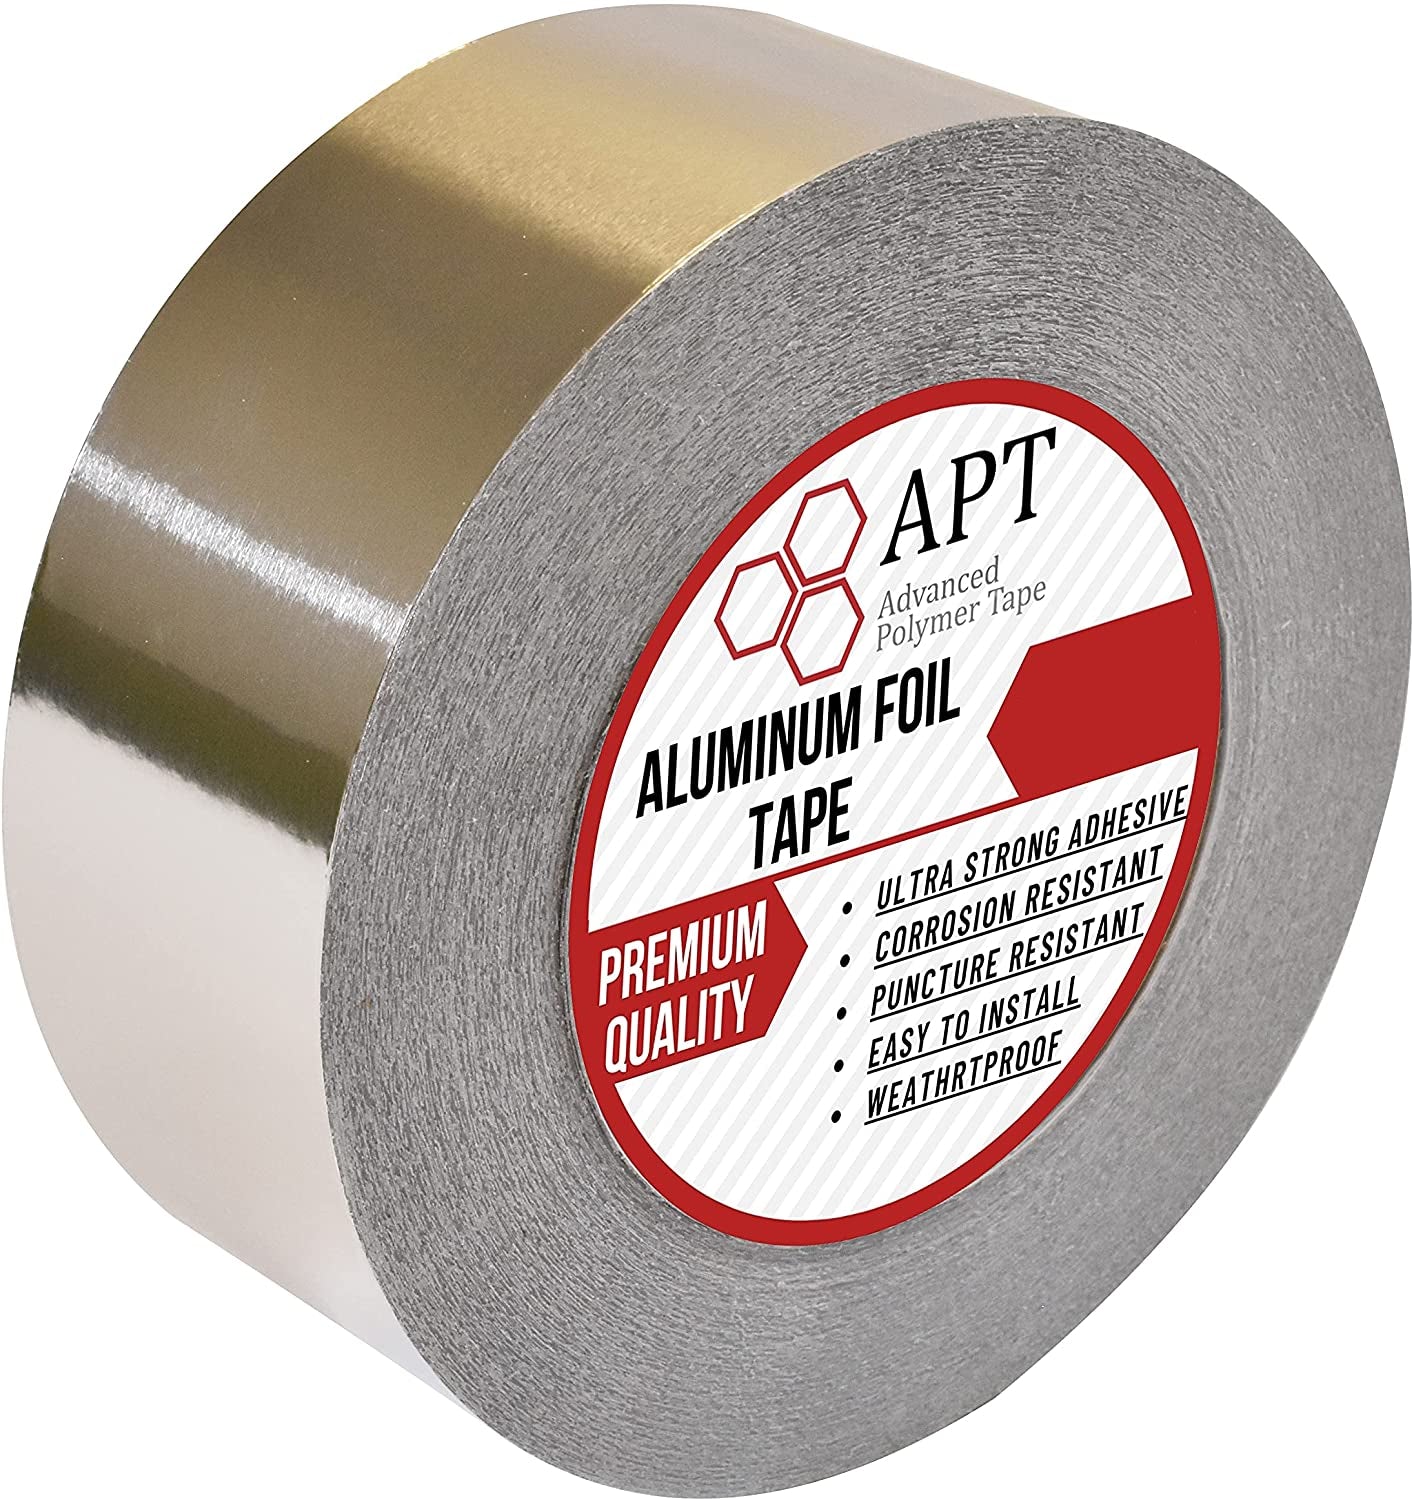 Aluminum Tape